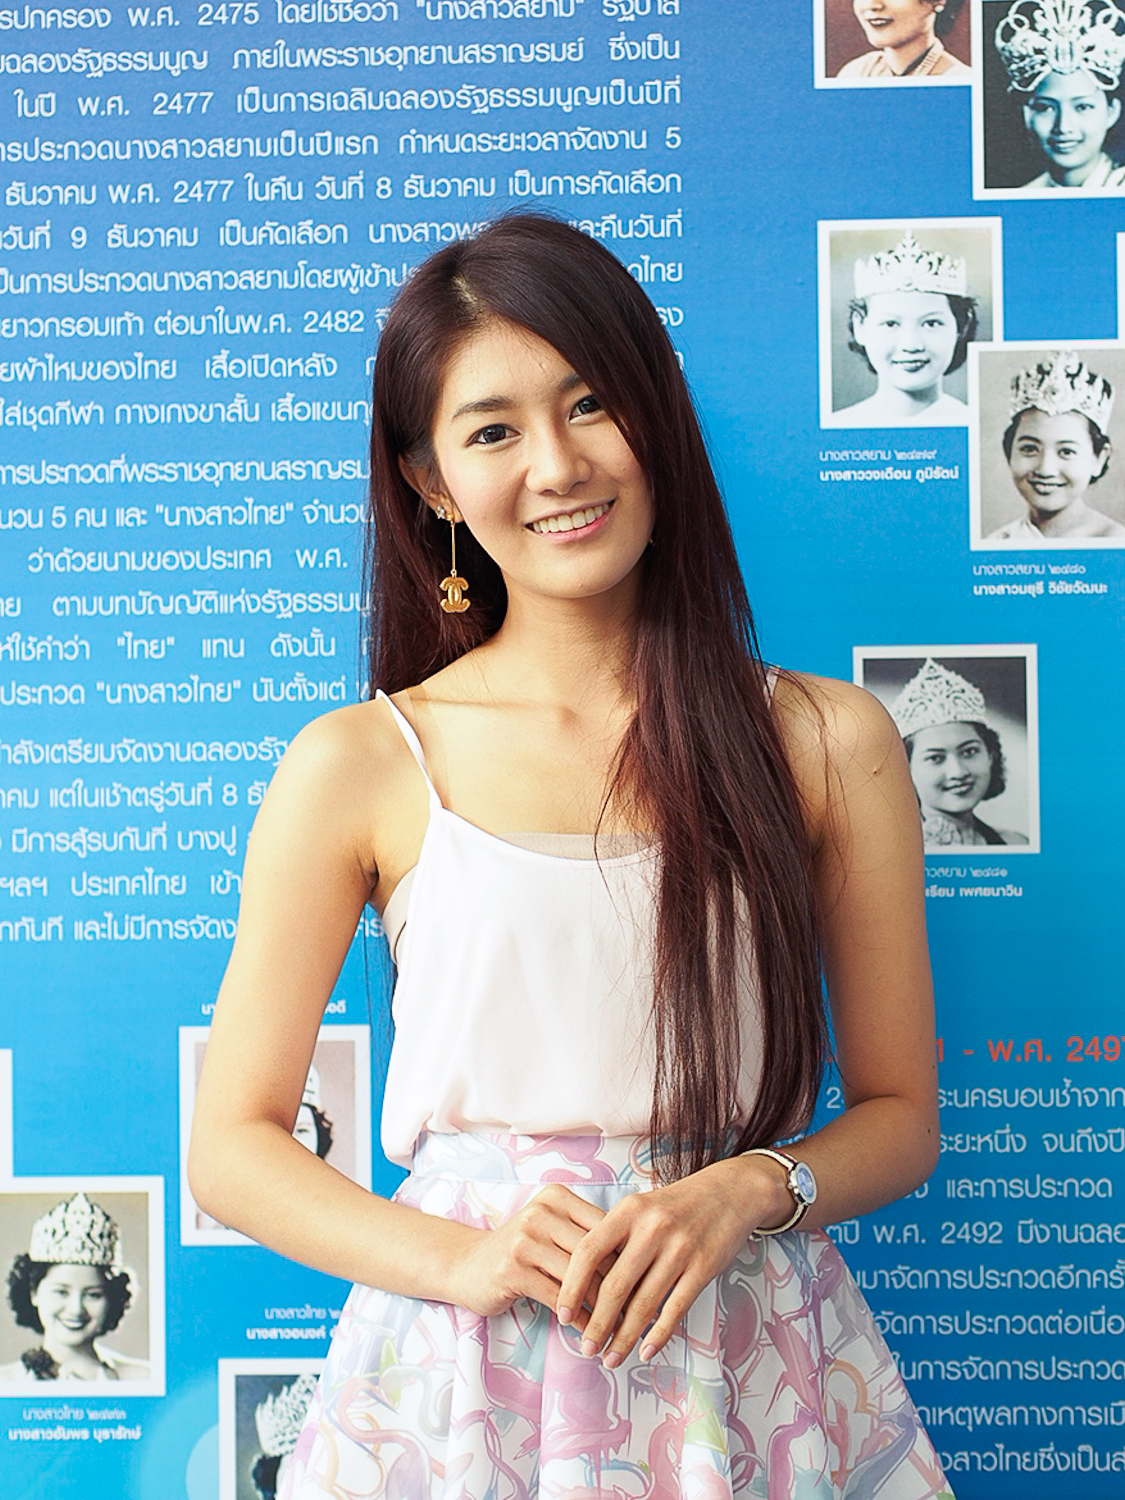 นางสาวไทย 2556 เผยภาพบรรยากาศเหล่าสาวงามร่วมสมัครชิงมงกุฎ